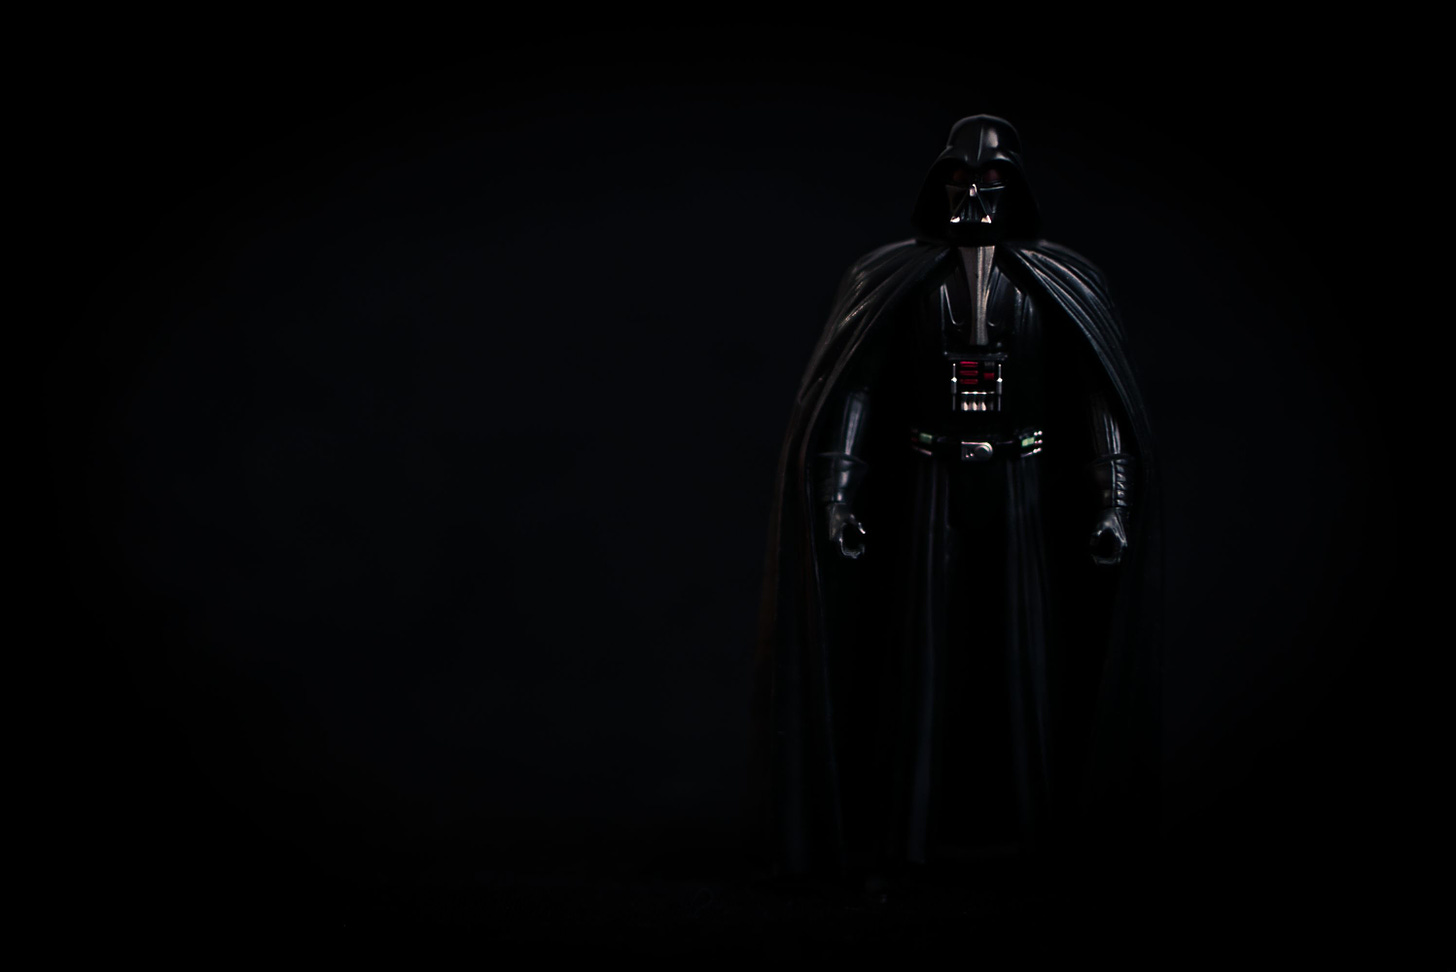 Darth Vader on black background